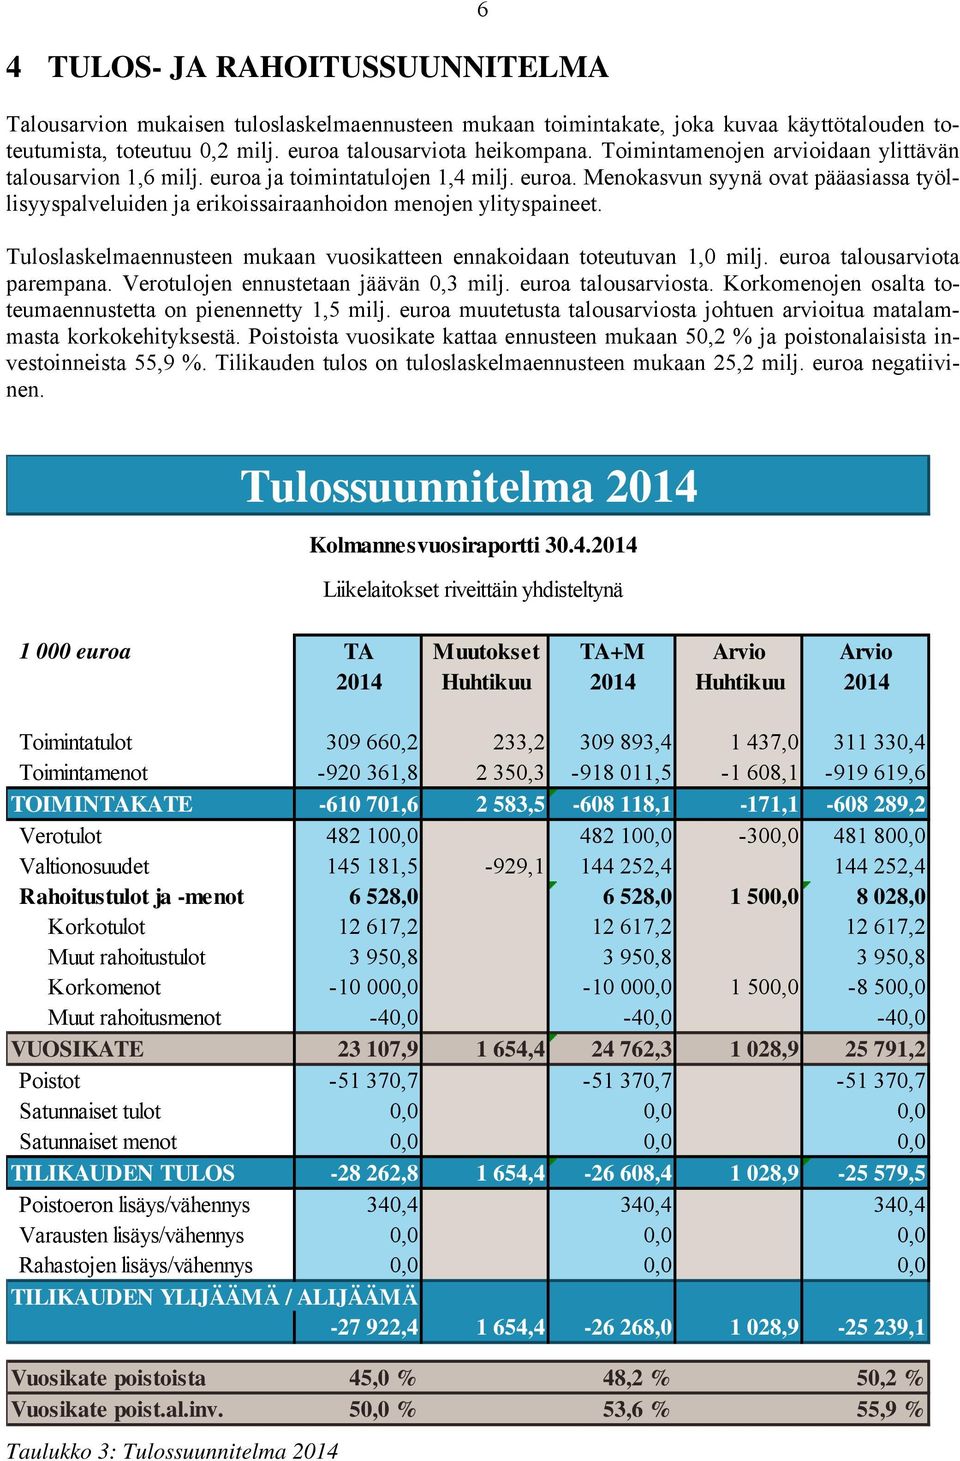 Tuloslaskelmaennusteen mukaan vuosikatteen ennakoidaan toteutuvan 1,0 milj. euroa talousarviota parempana. Verotulojen ennustetaan jäävän 0,3 milj. euroa talousarviosta.